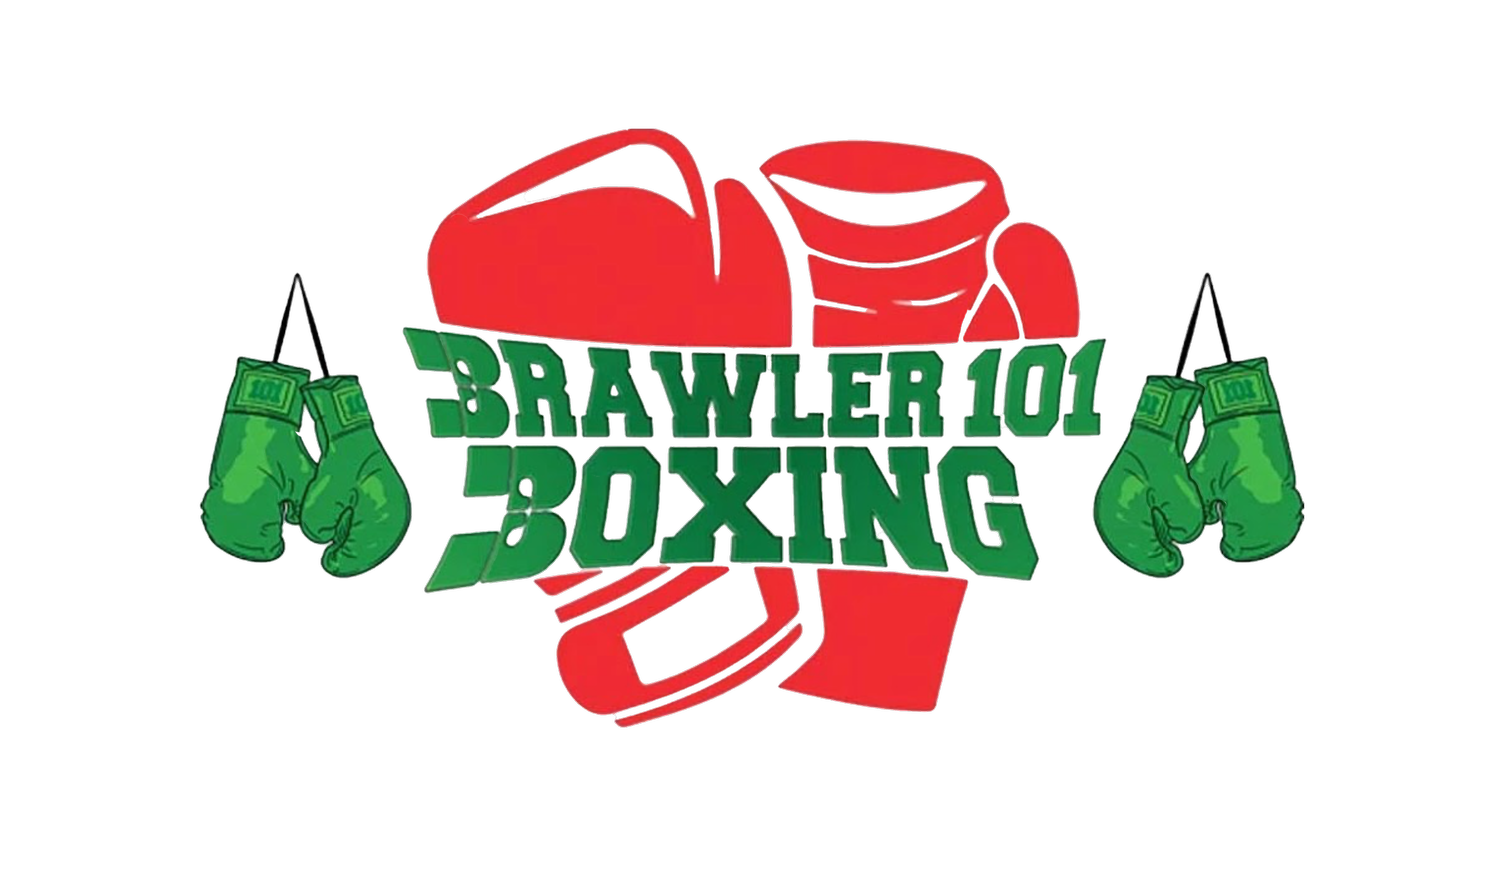 Brawler 101 Boxing